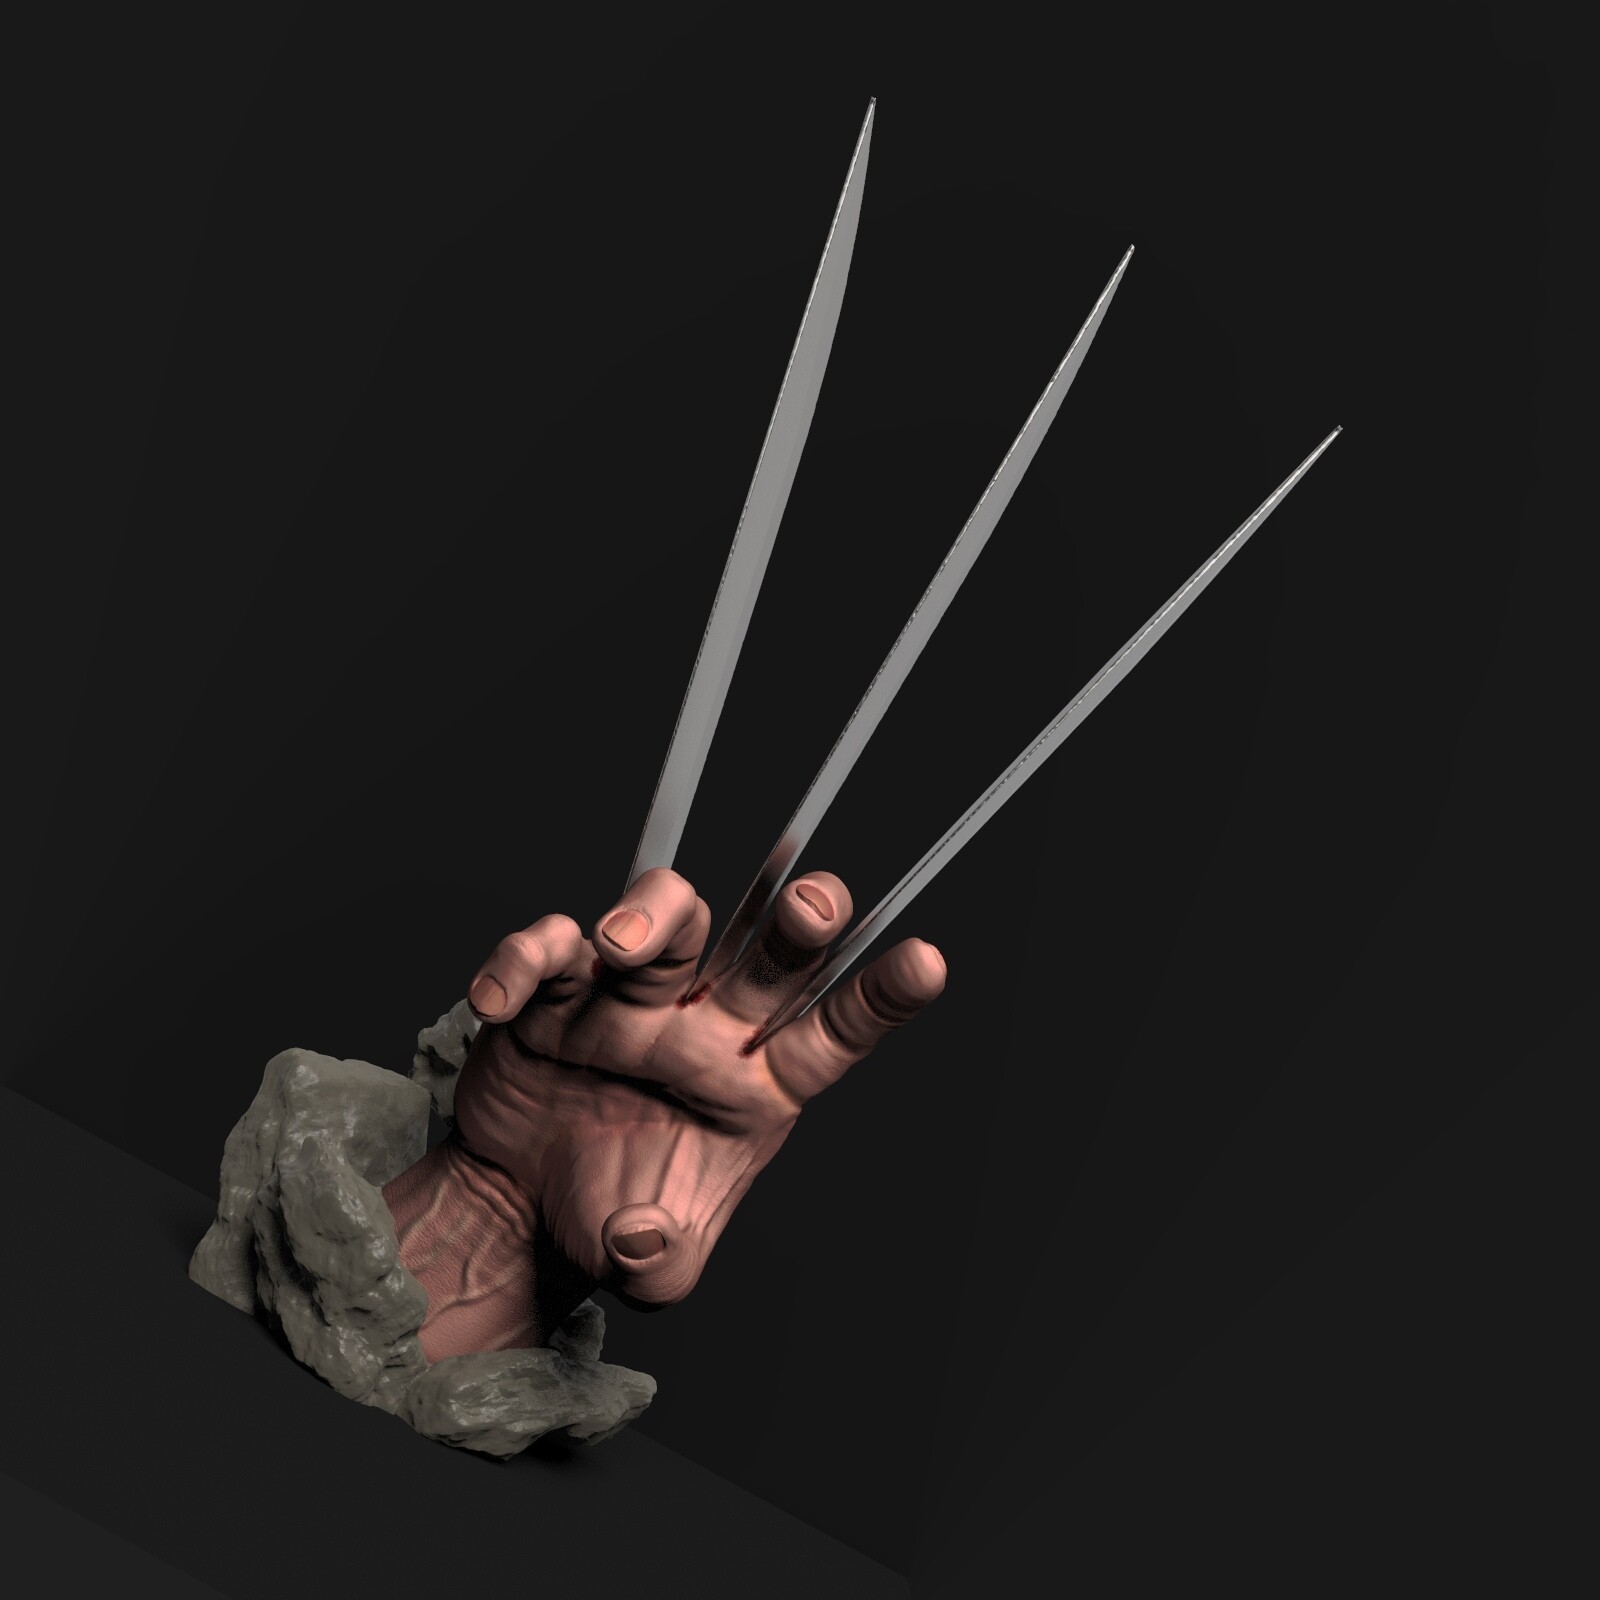 ArtStation - Wolverine hand